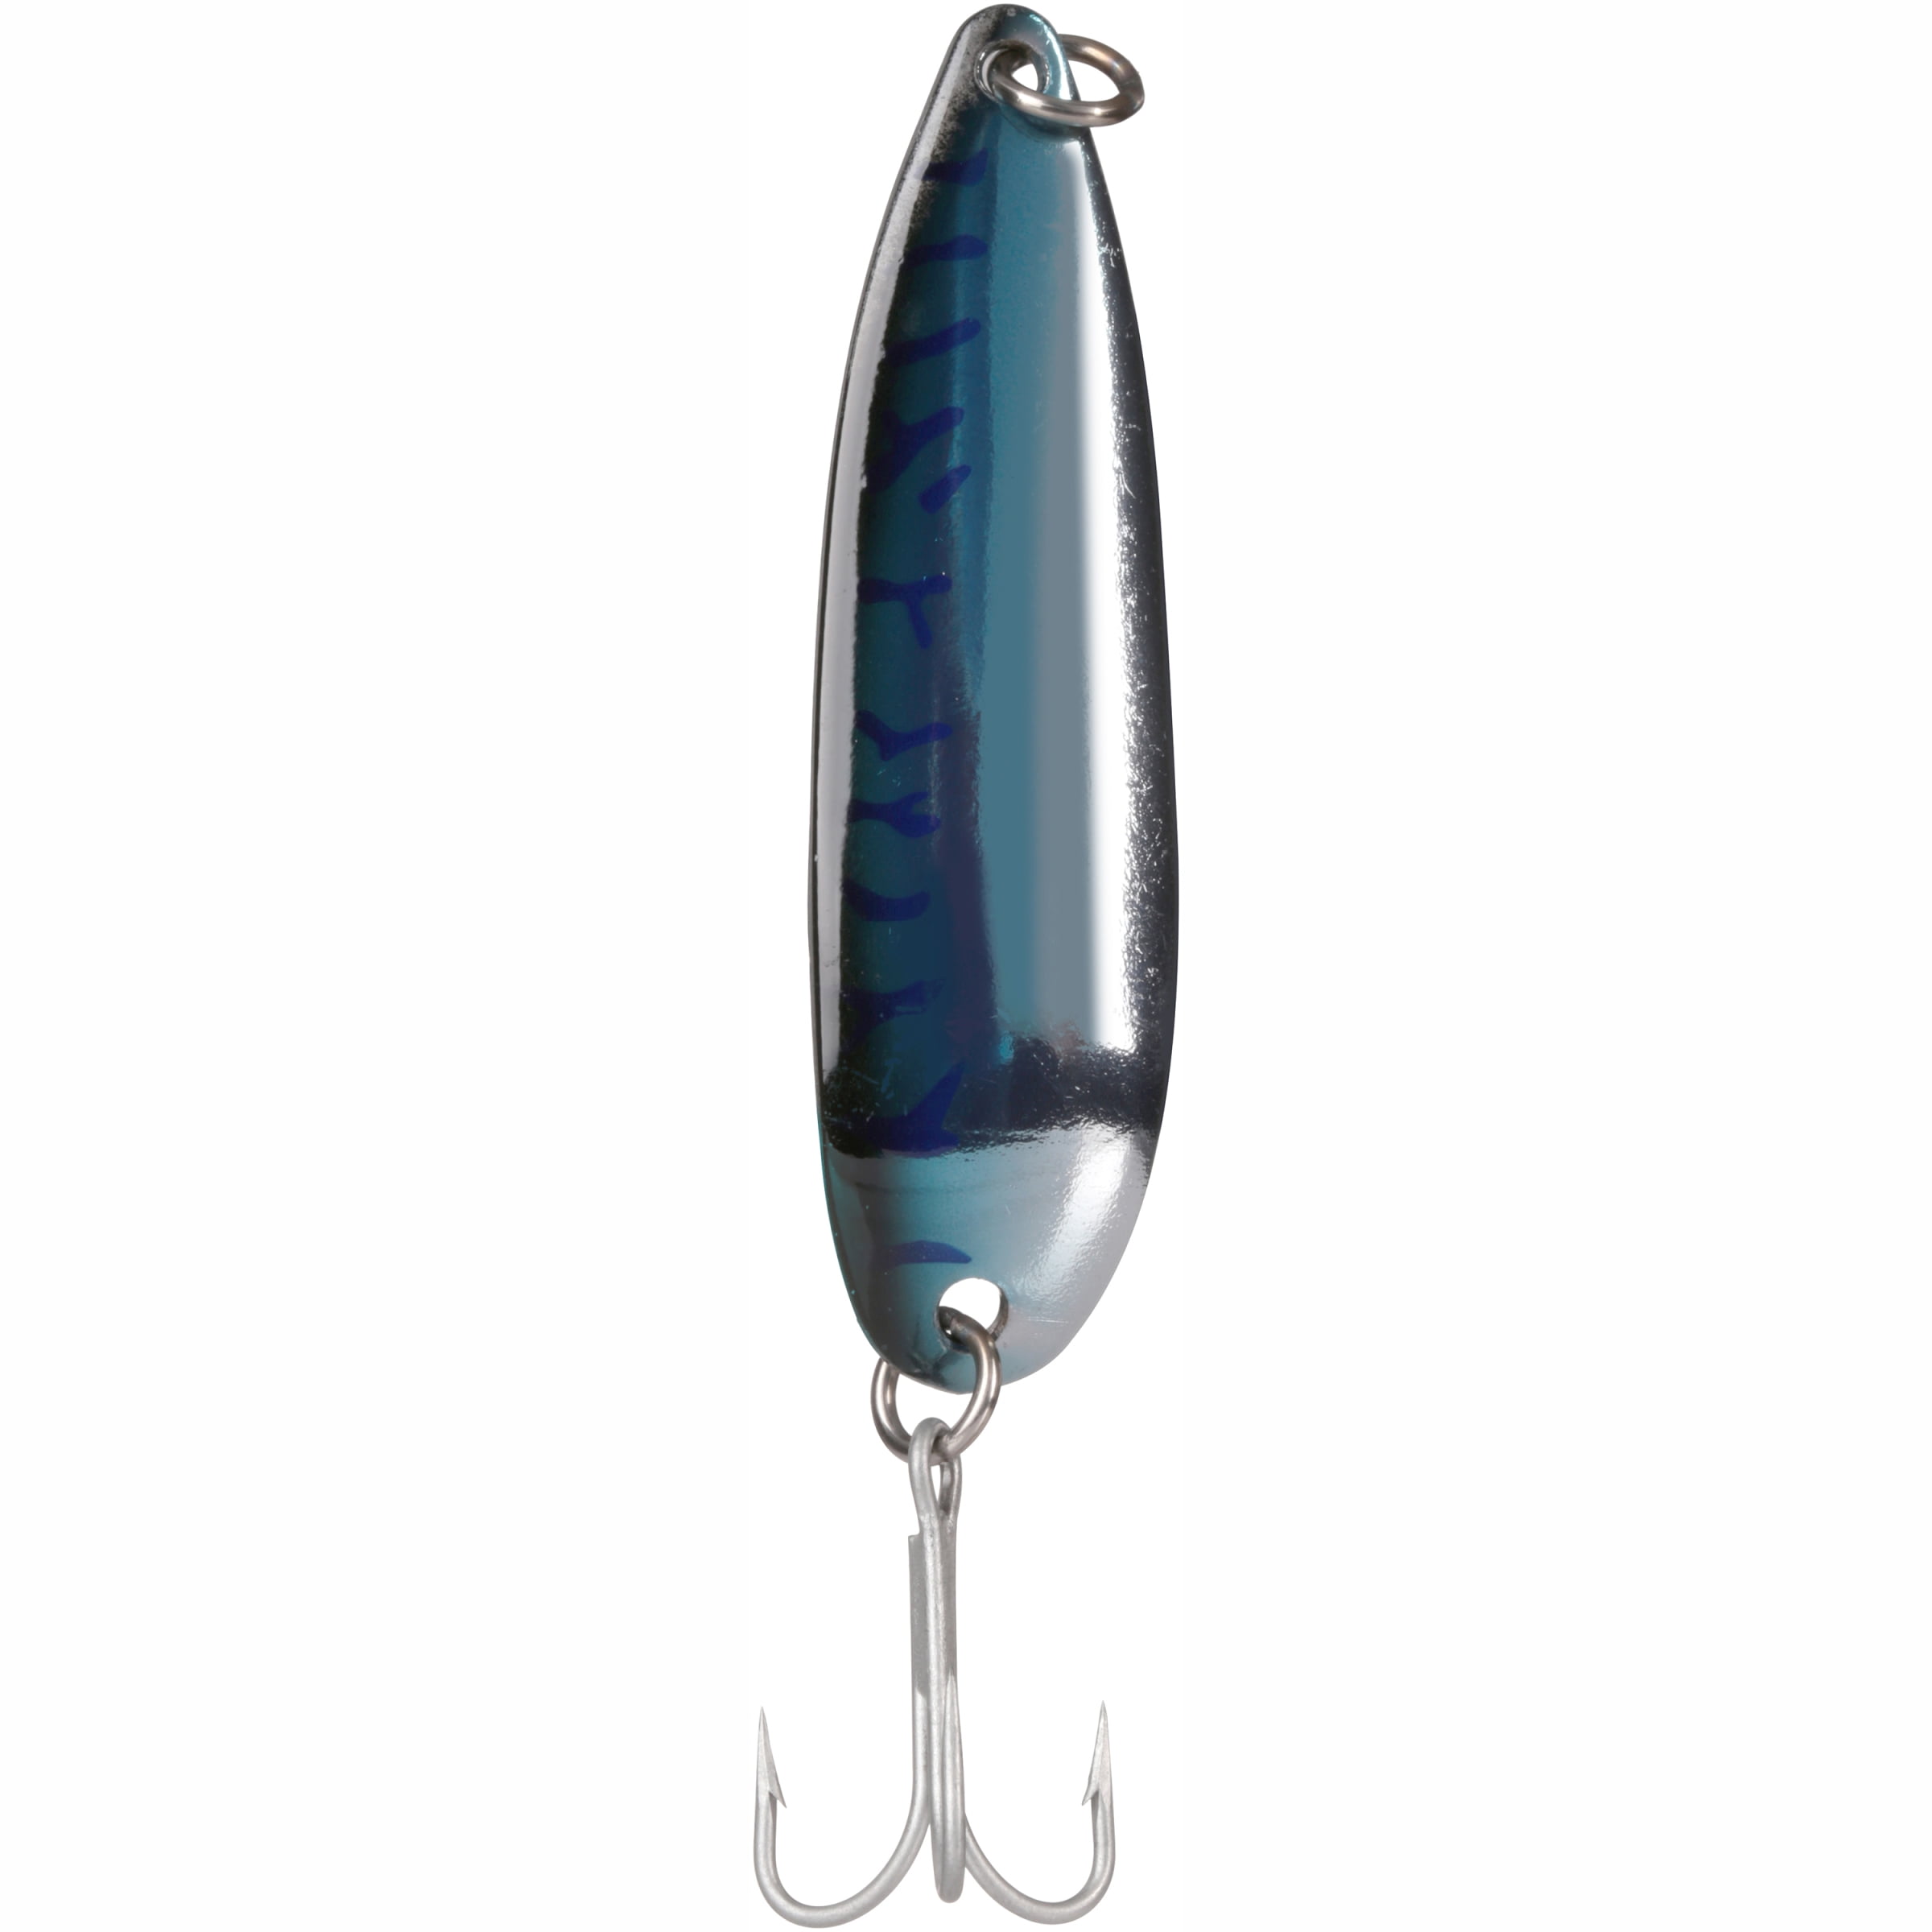 Luhr Jensen Krocodile 1oz Spoon Fishing Lure 3 5/16 Chrome/Silver  Prism-Lite 